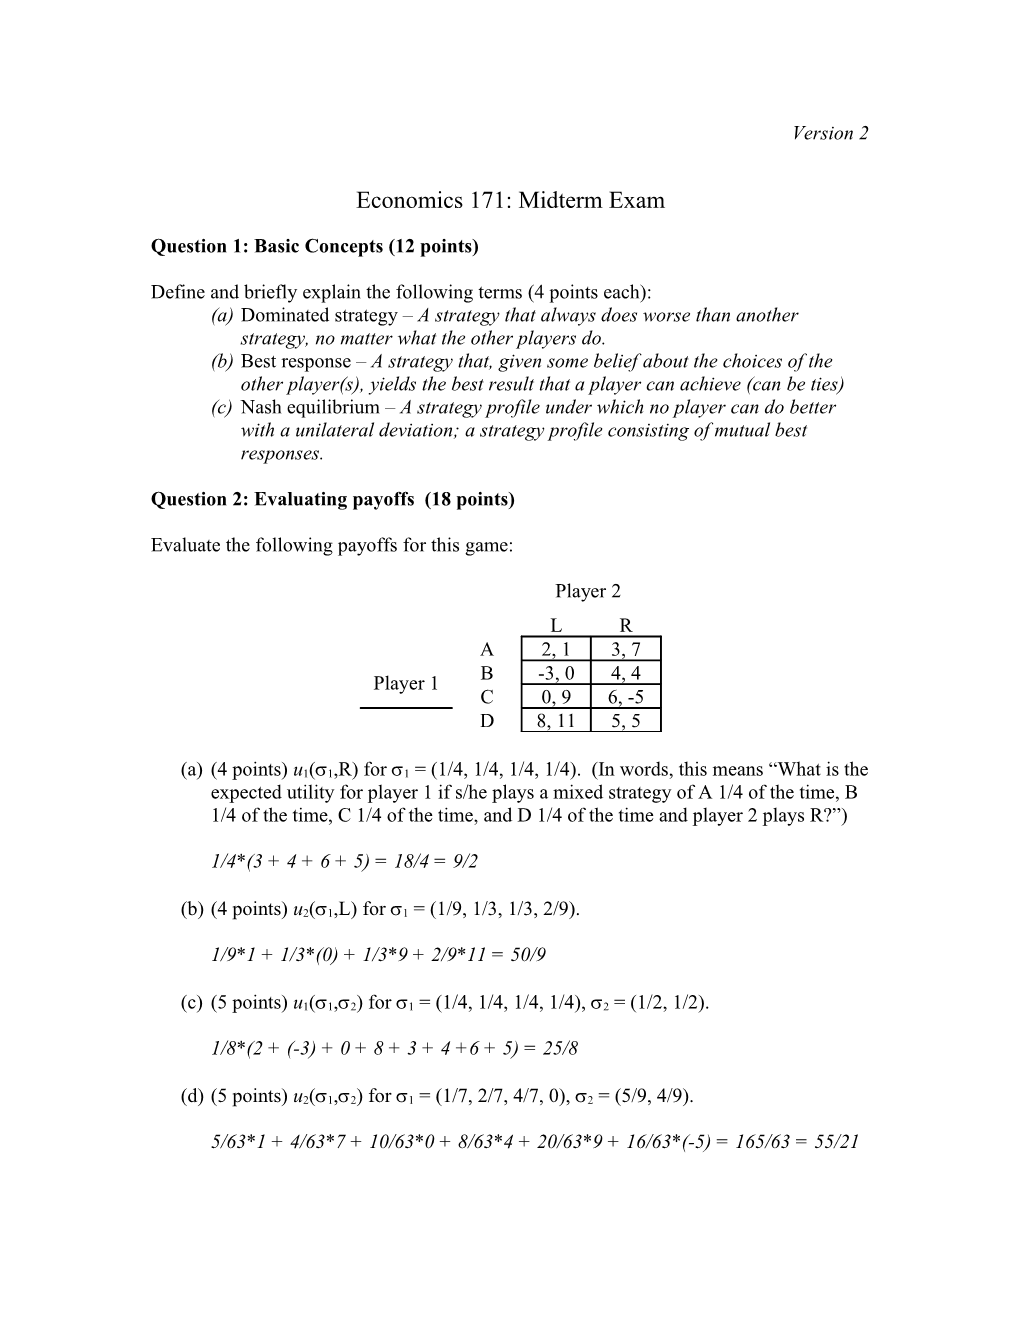 Economics 171: Midterm Exam